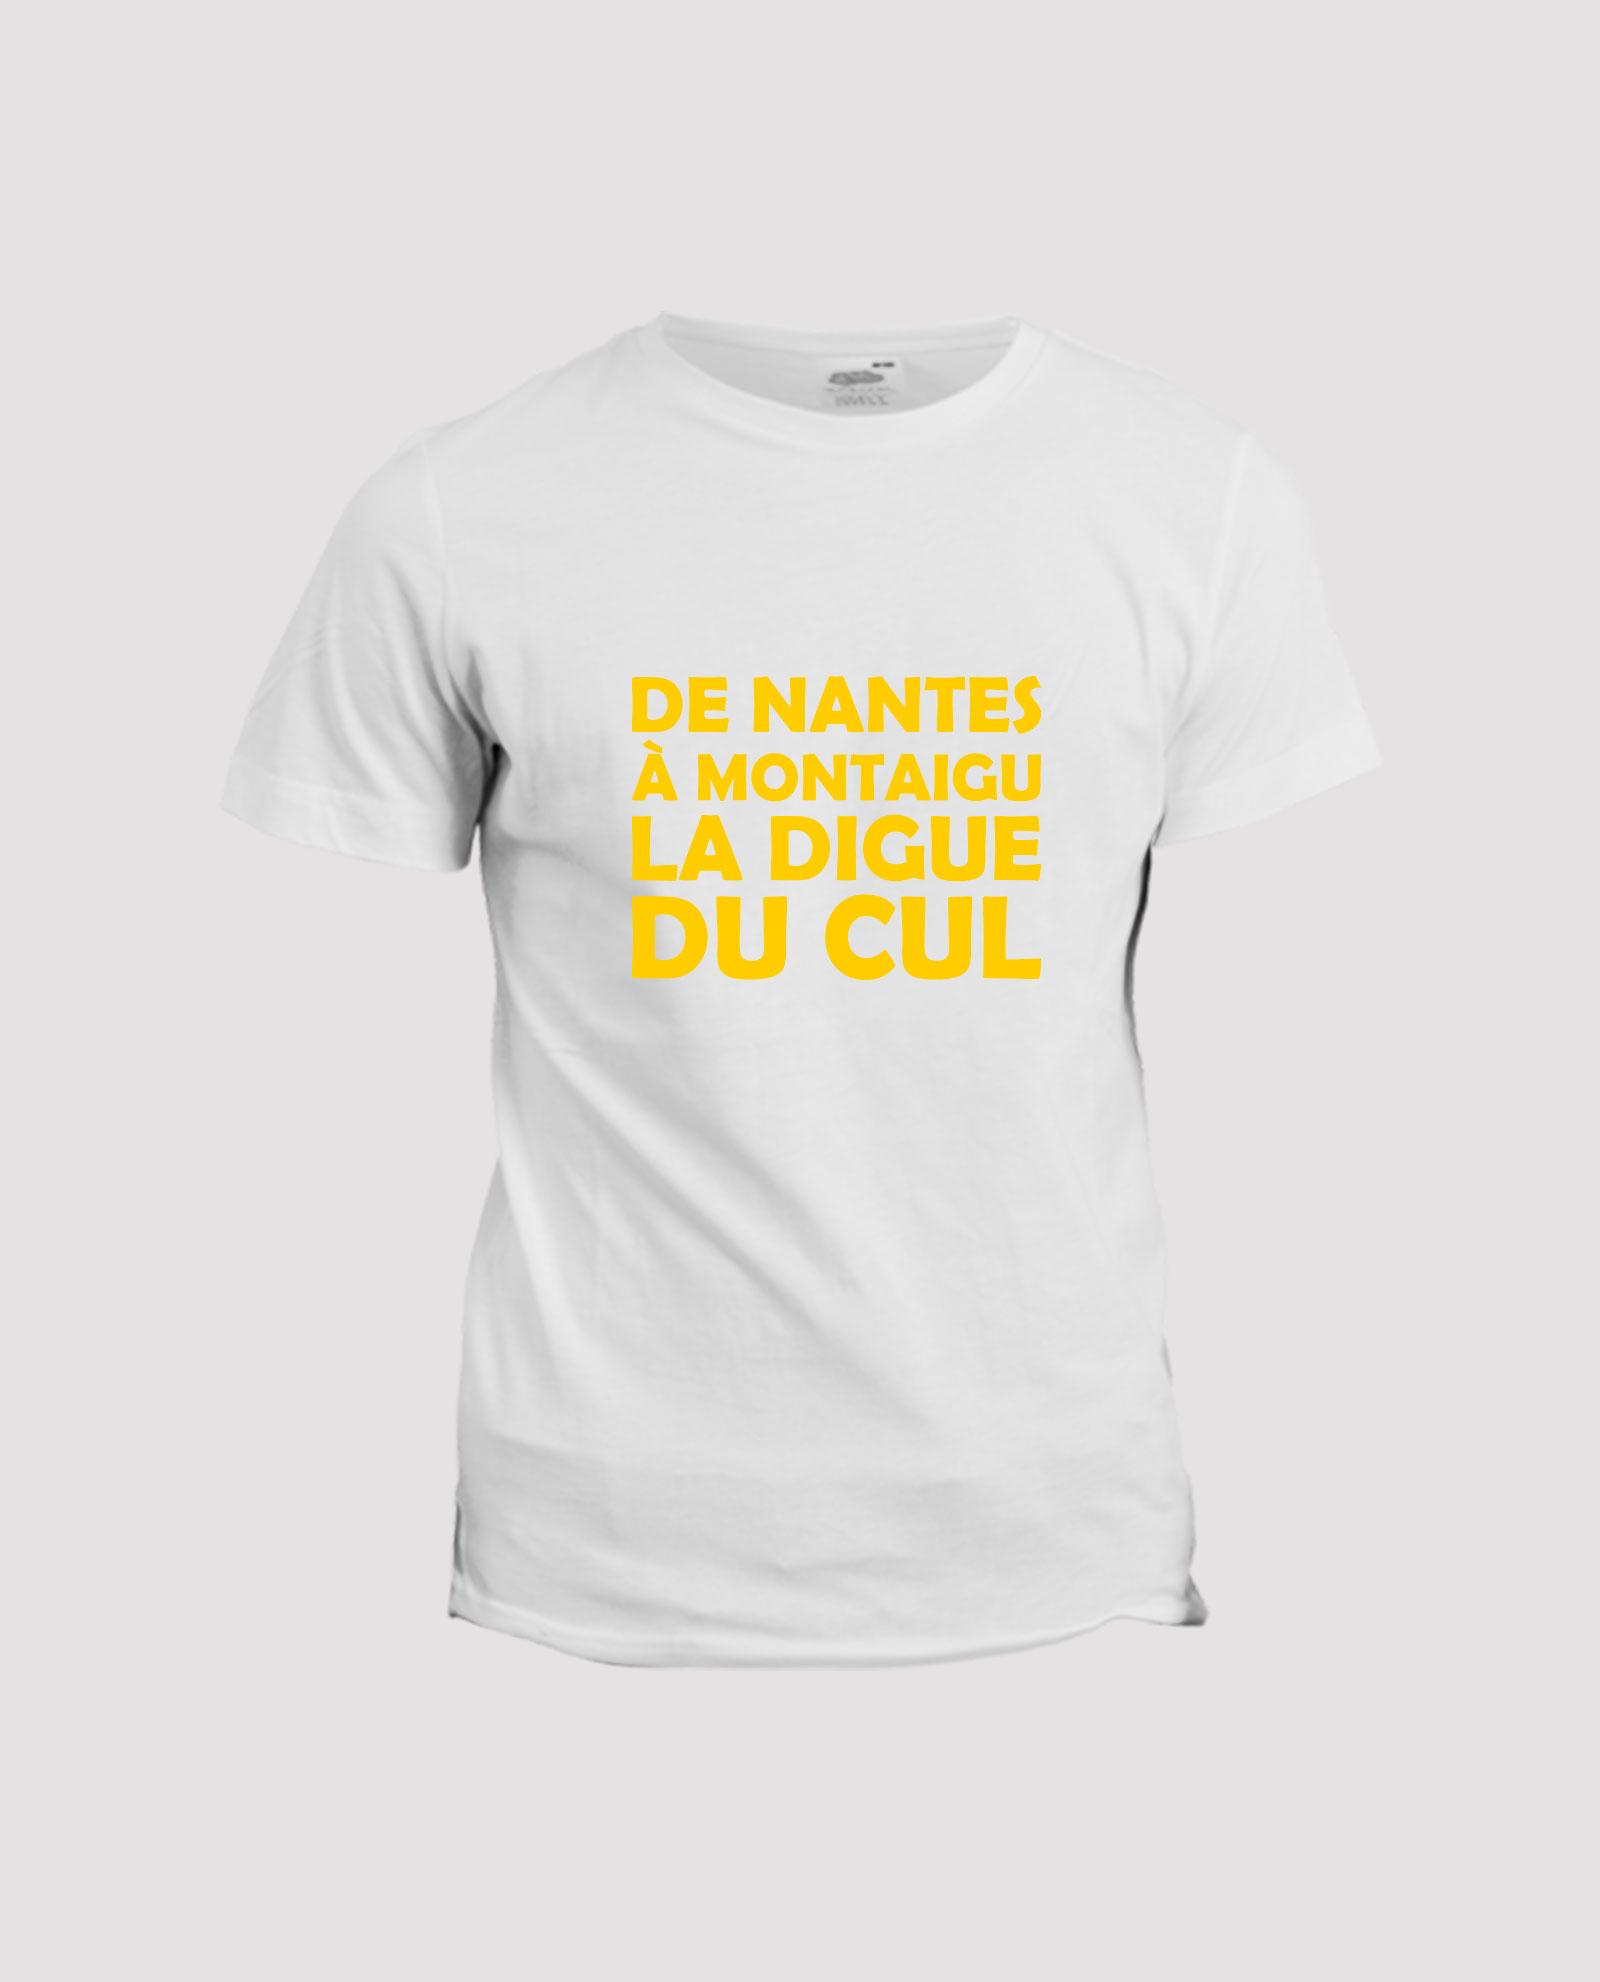 la-ligne-shop-t-shirt-humour-chanson-paillarde-de-nantes-a-montaigu-la-digue-du-cul